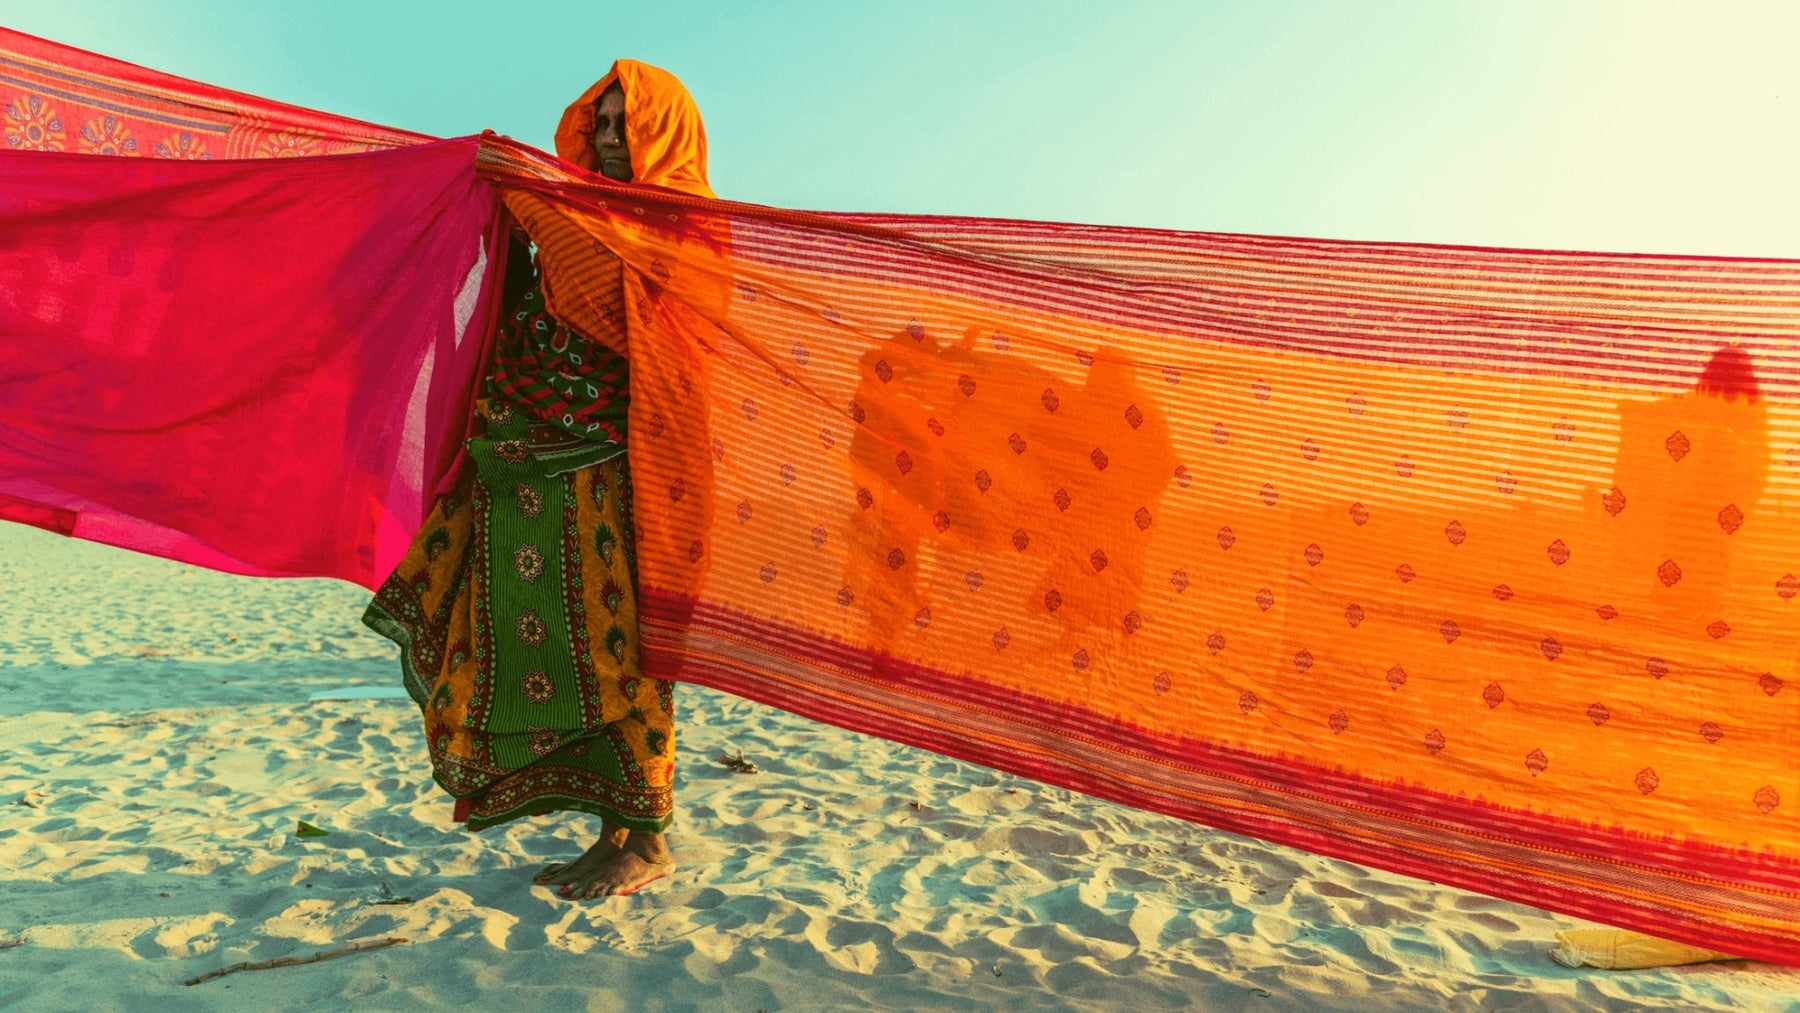 'Her story' of a Saree - Seven Sarees